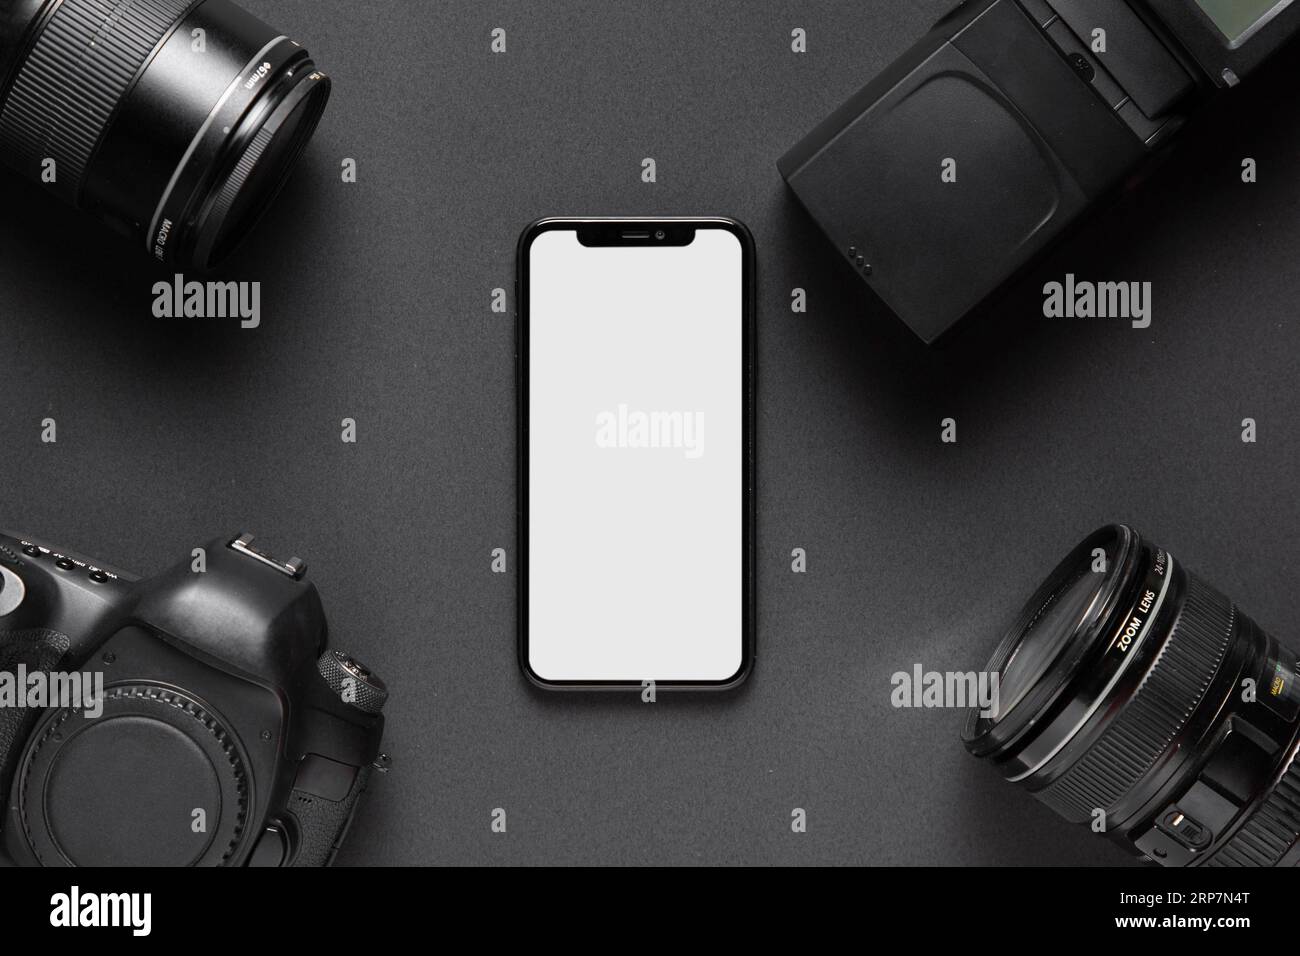 Concetto grafico con accessori per fotocamera centrale per smartphone Foto Stock